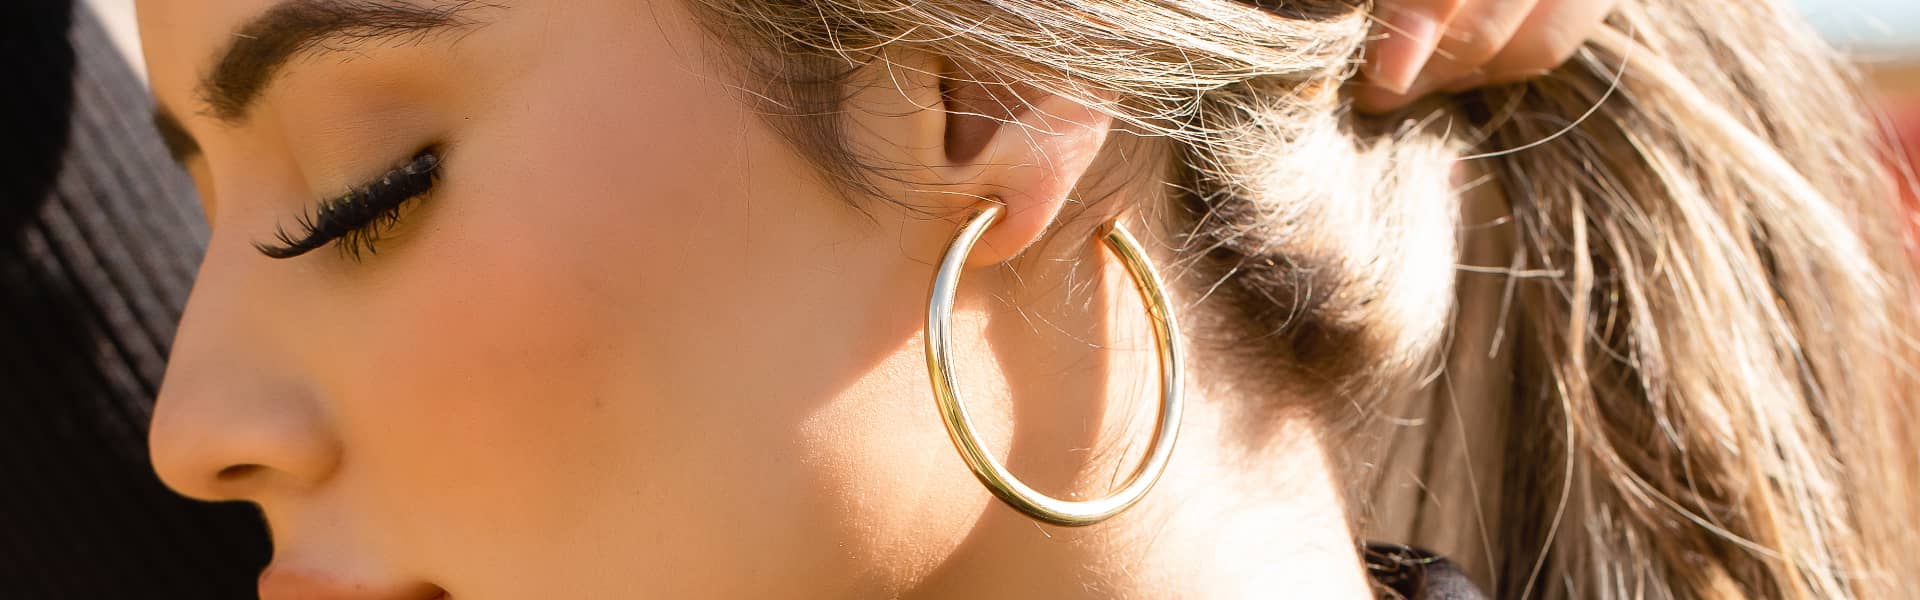 Model Wearing Gold Loop Earrings